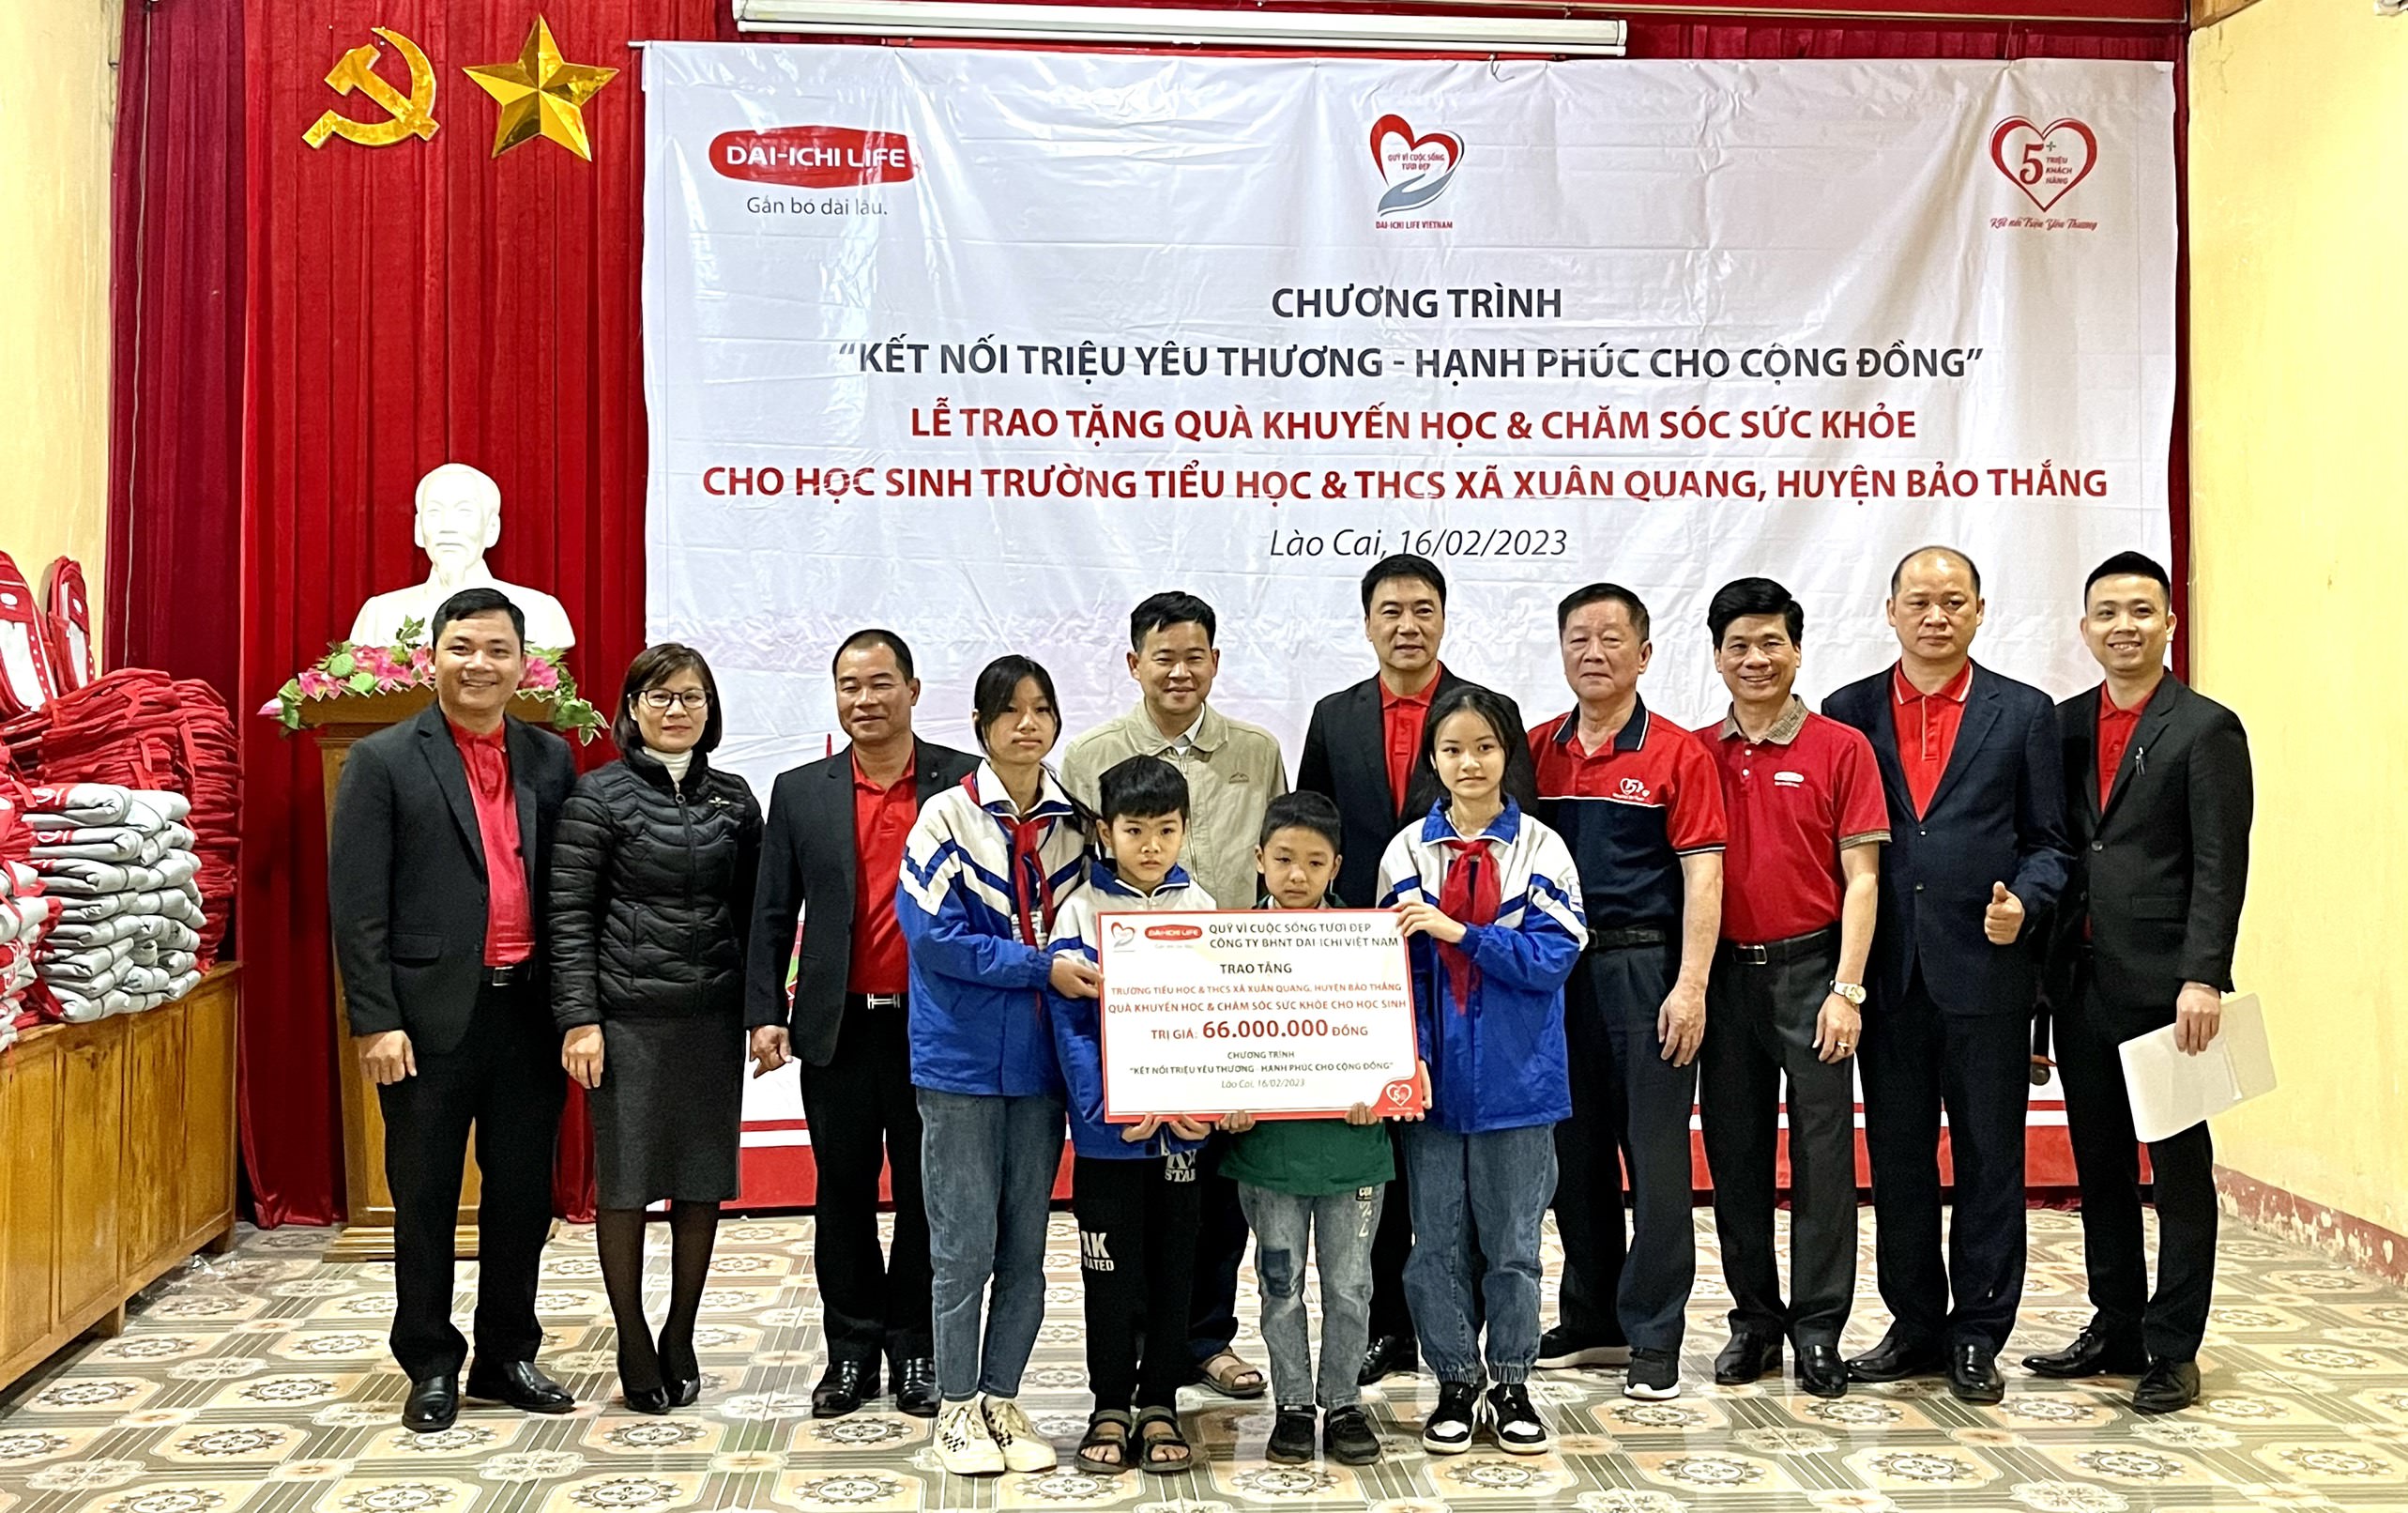 Dai-ichi Life Việt Nam tặng áo ấm và quà khuyến học cho trẻ em vùng cao tỉnh Lào Cai...